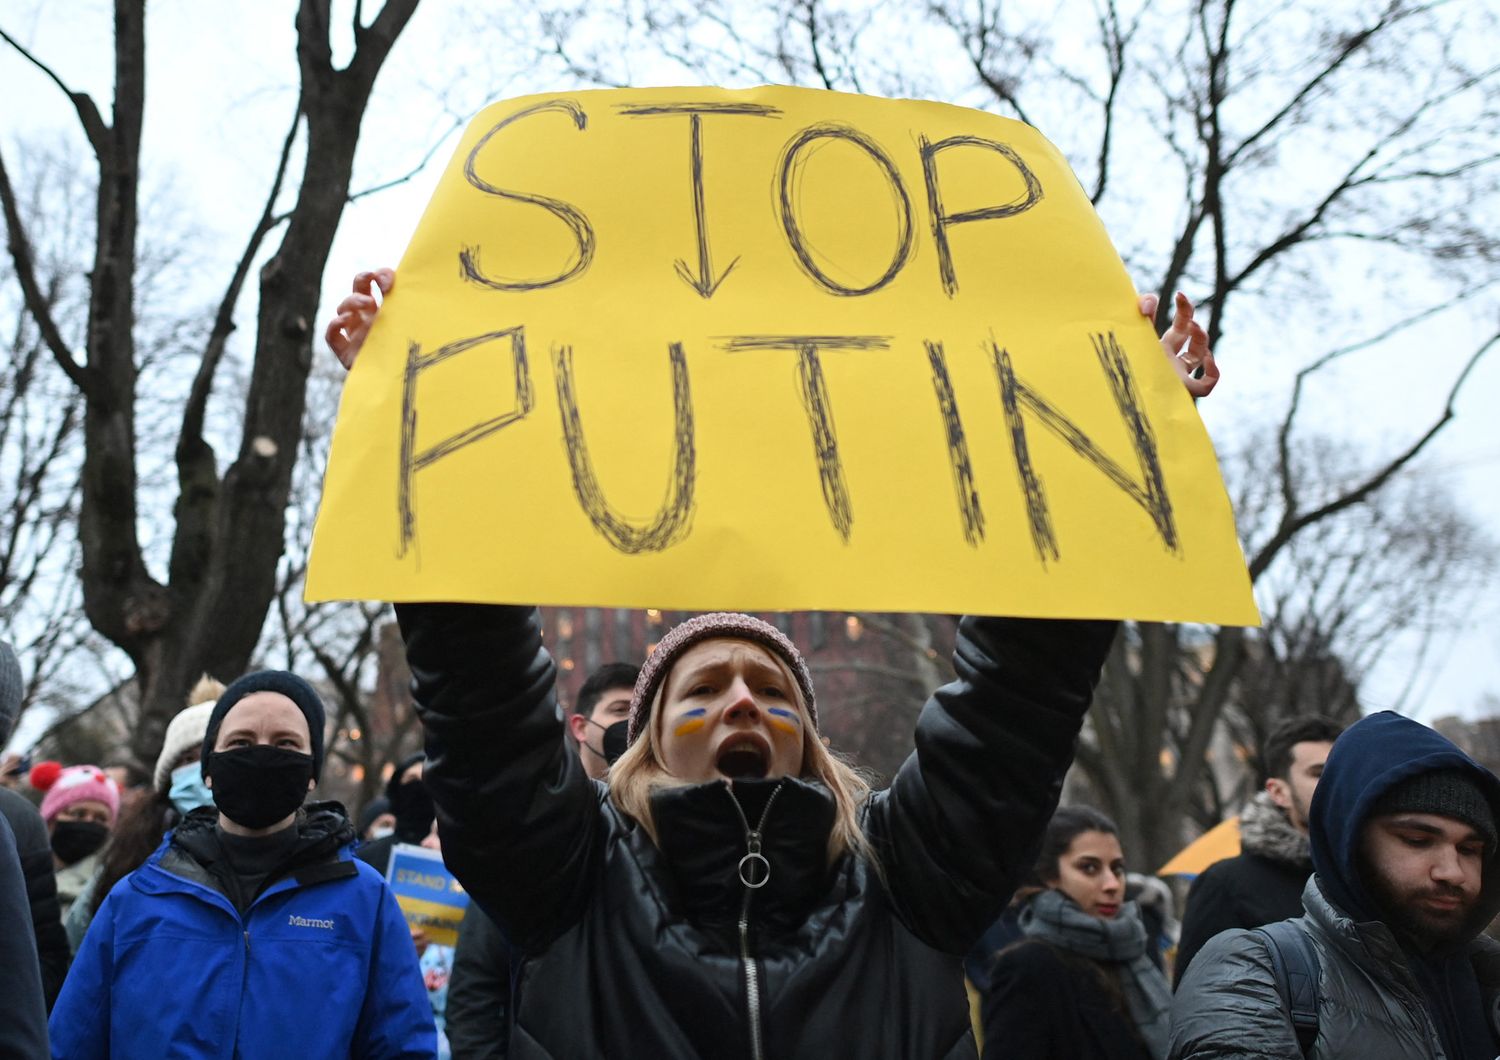 Proteste contro la guerra in Ucraina